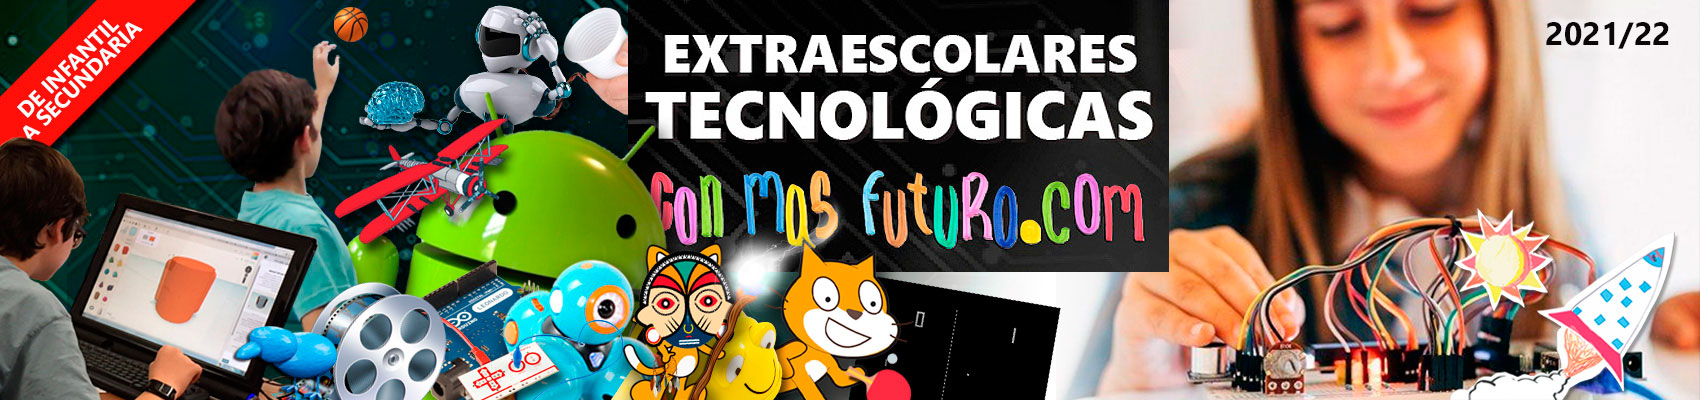 Extraescolares Tecnológicas CMF 2021-22